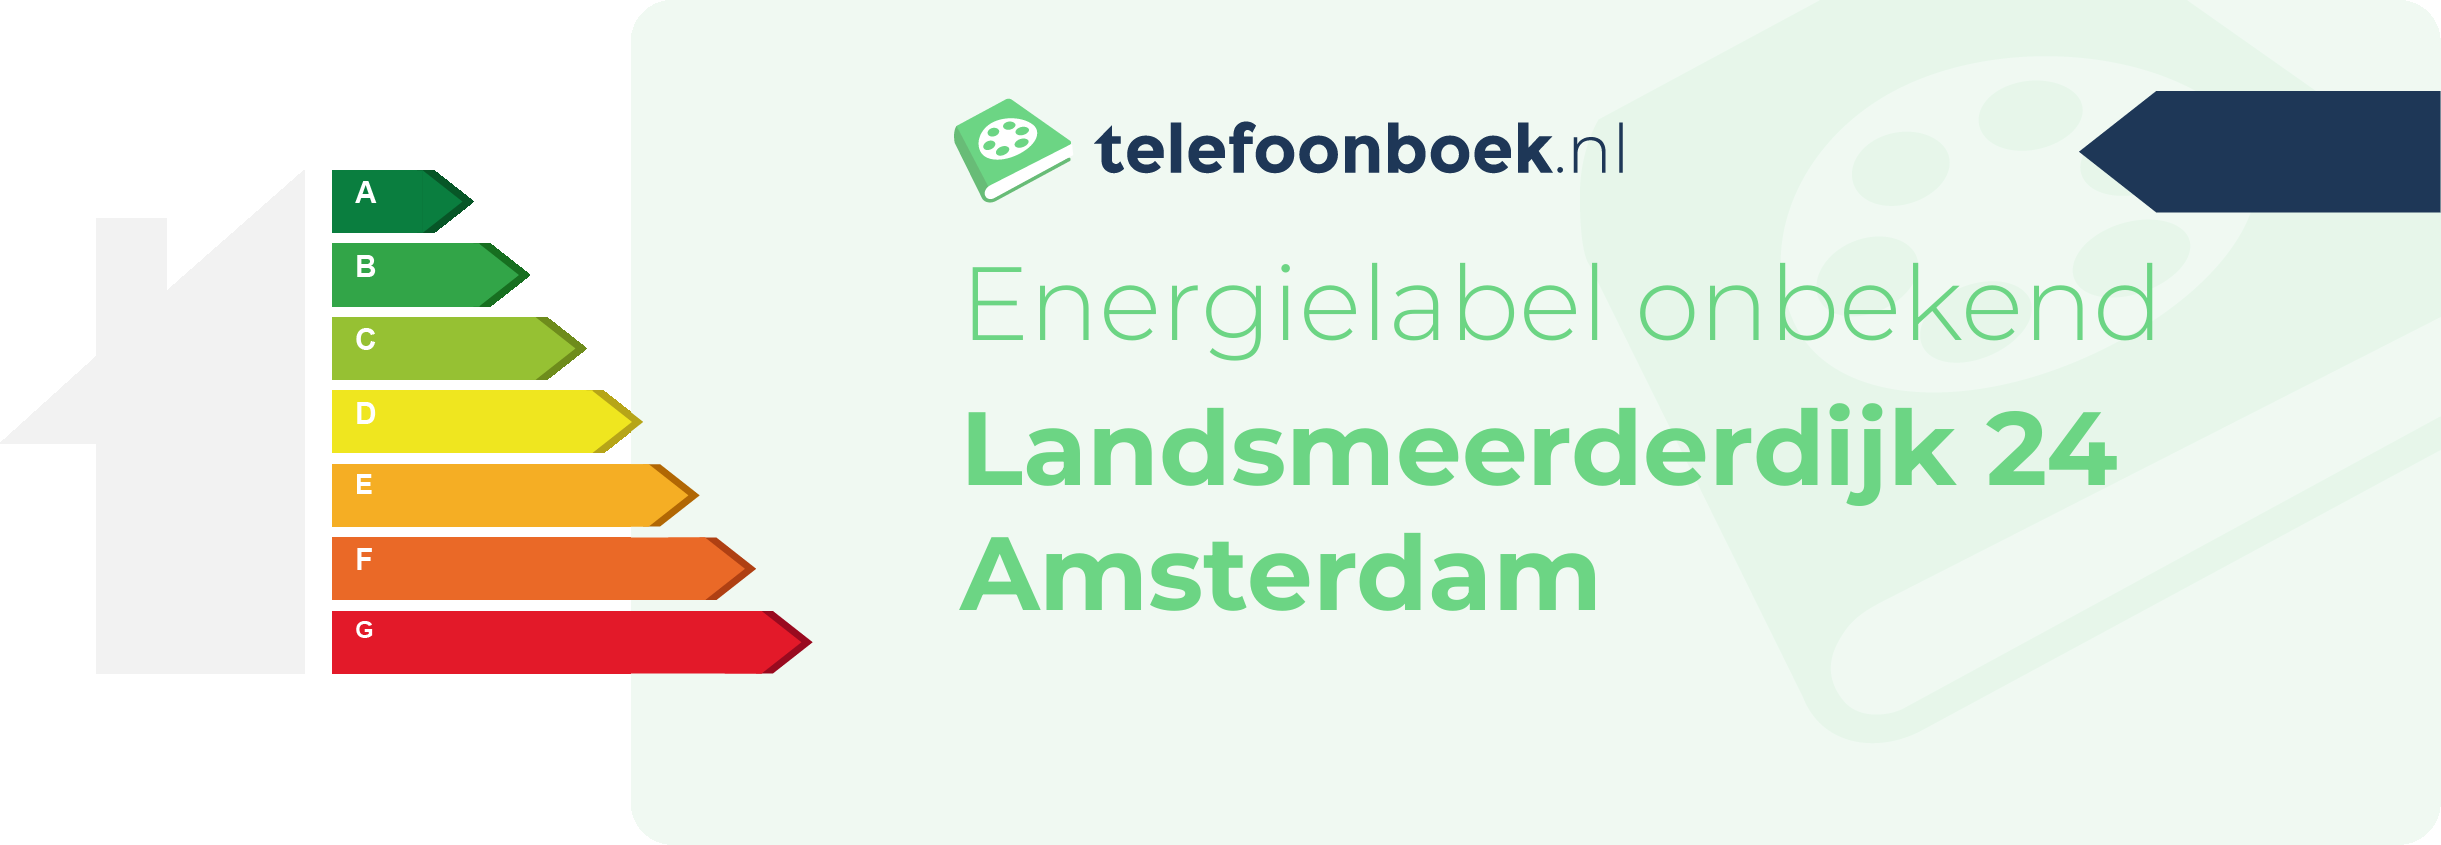 Energielabel Landsmeerderdijk 24 Amsterdam